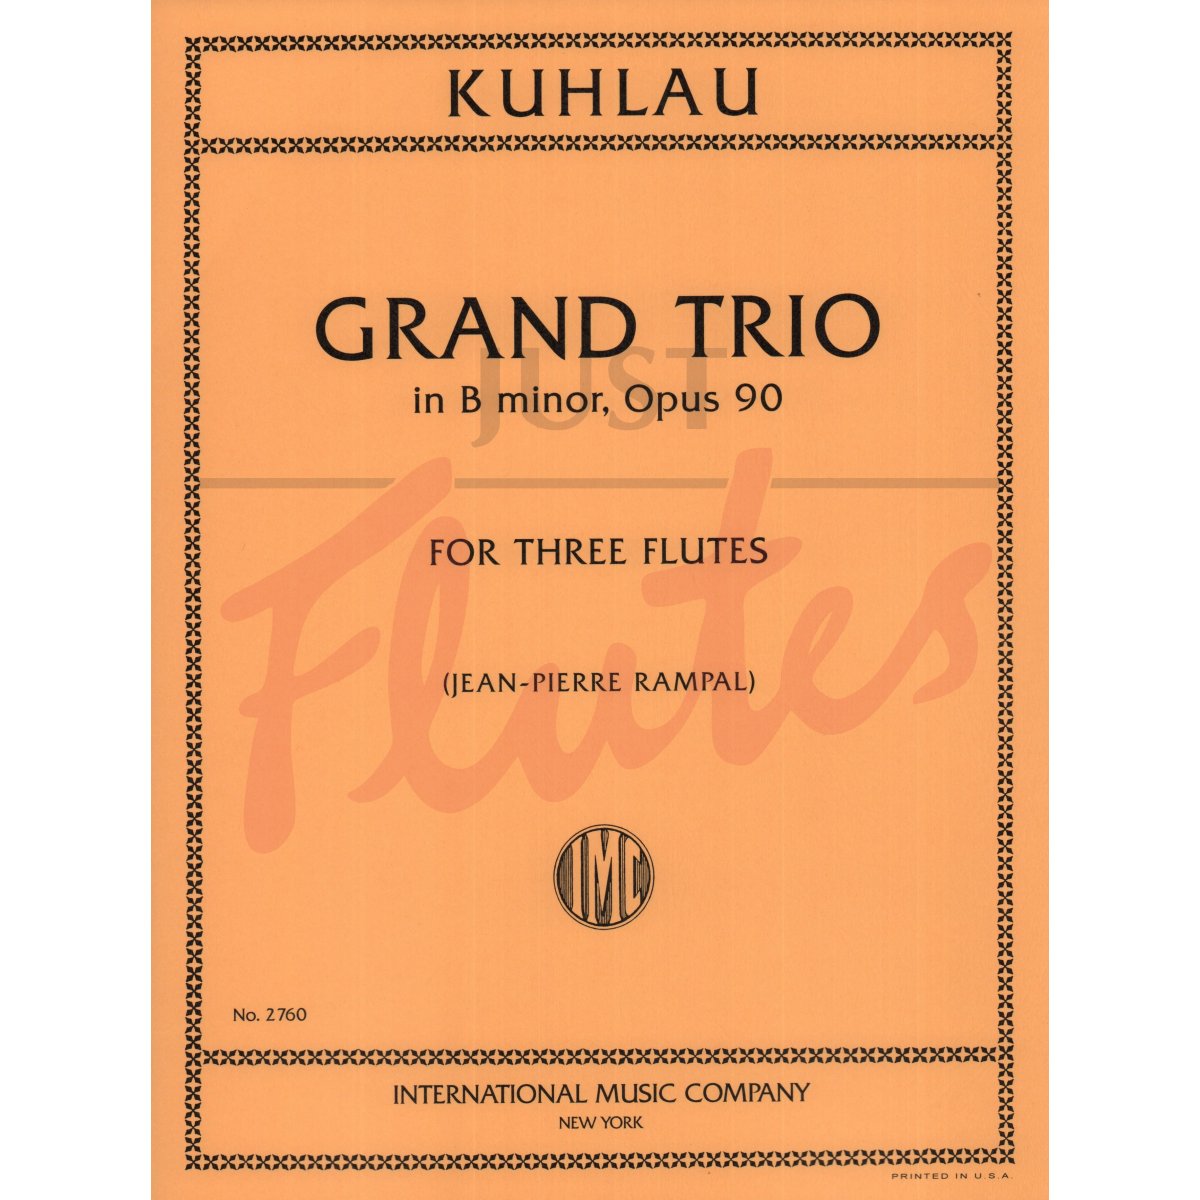 Grand Trio in B minor for Three Flutes